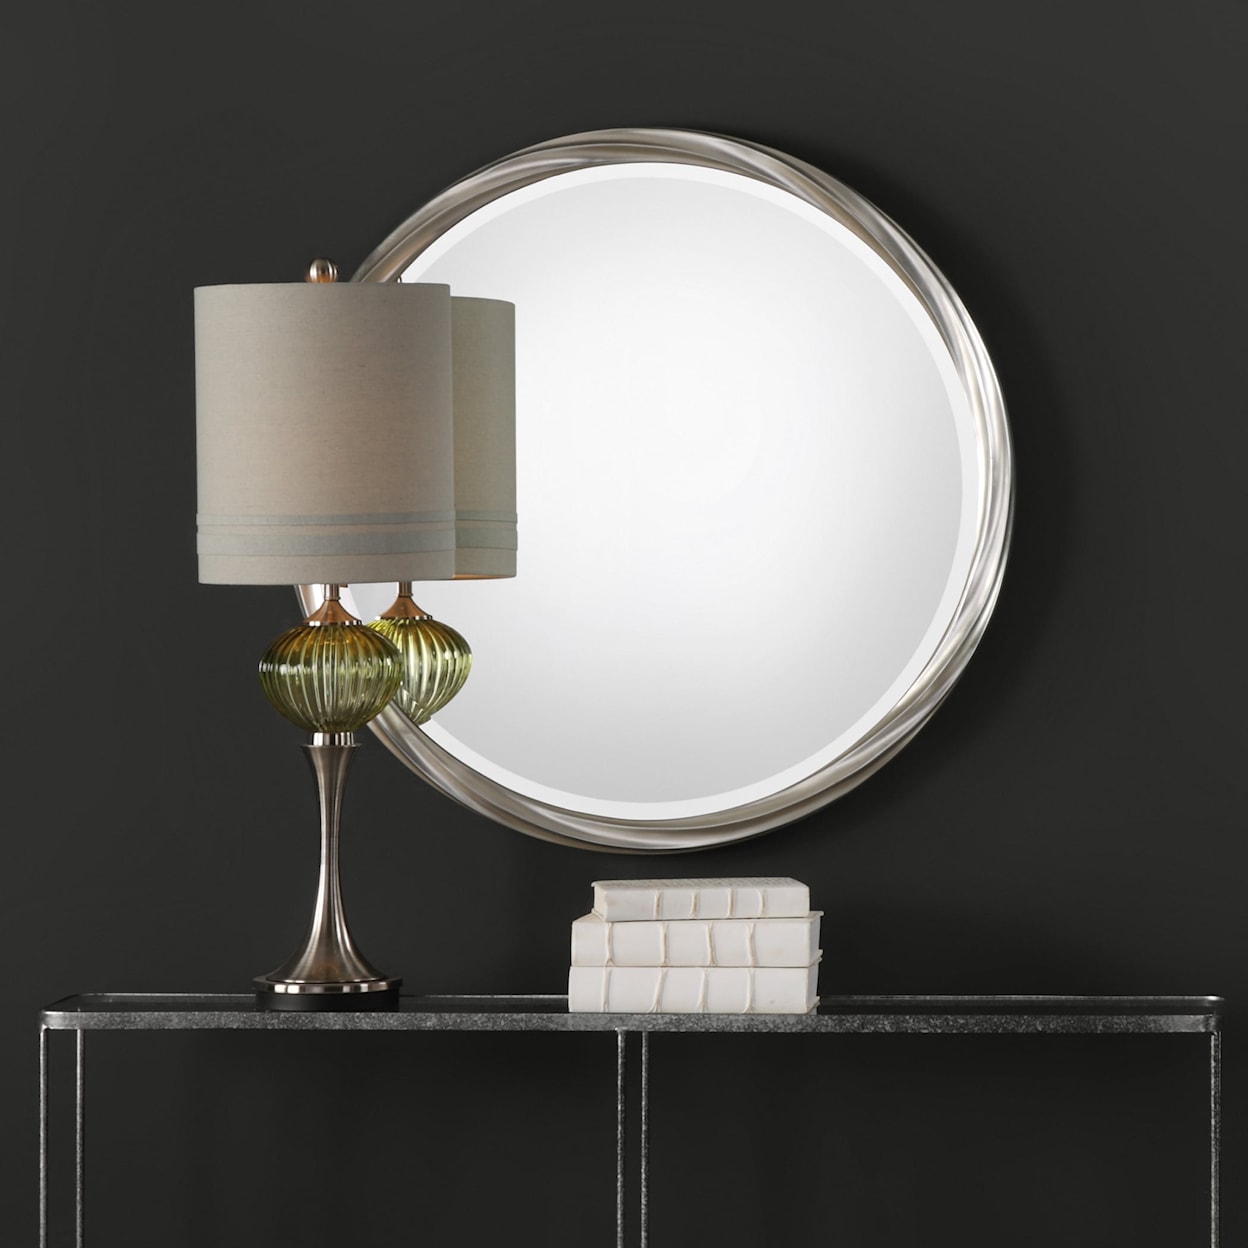 Uttermost Mirrors - Round Orion Silver Round Mirror